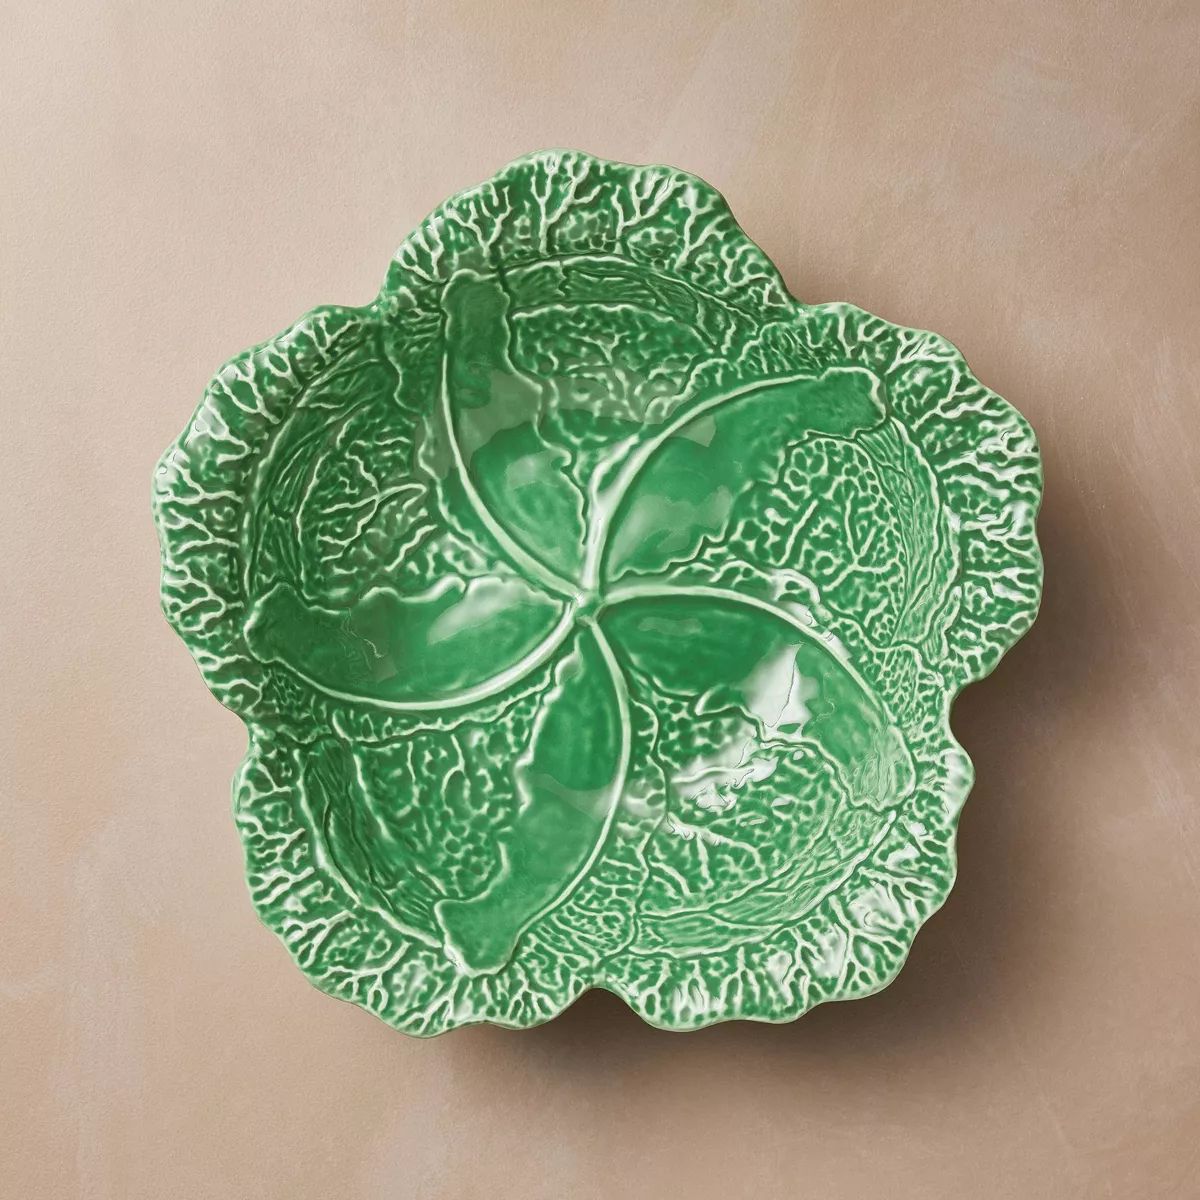 Large Stoneware Fall Cabbage Serving Bowl Green - John Derian for Target | Target